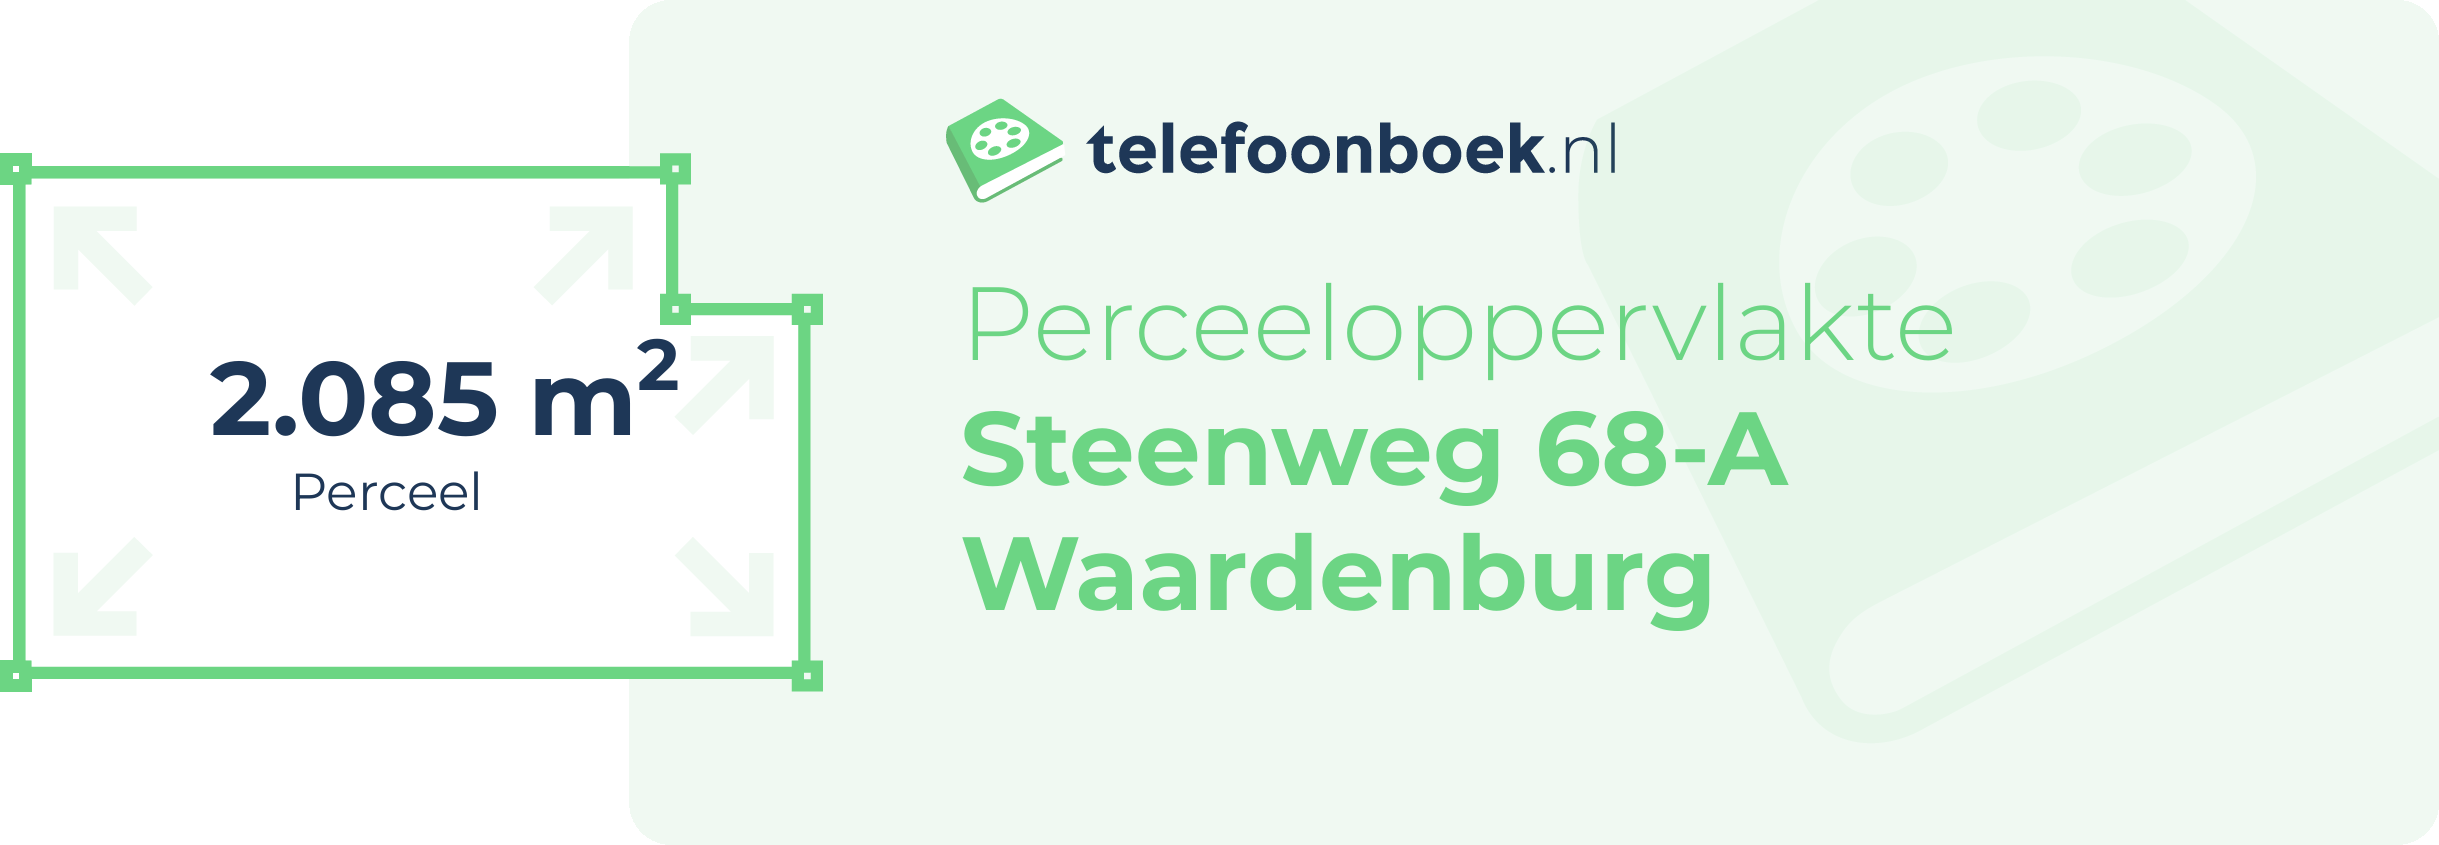 Perceeloppervlakte Steenweg 68-A Waardenburg